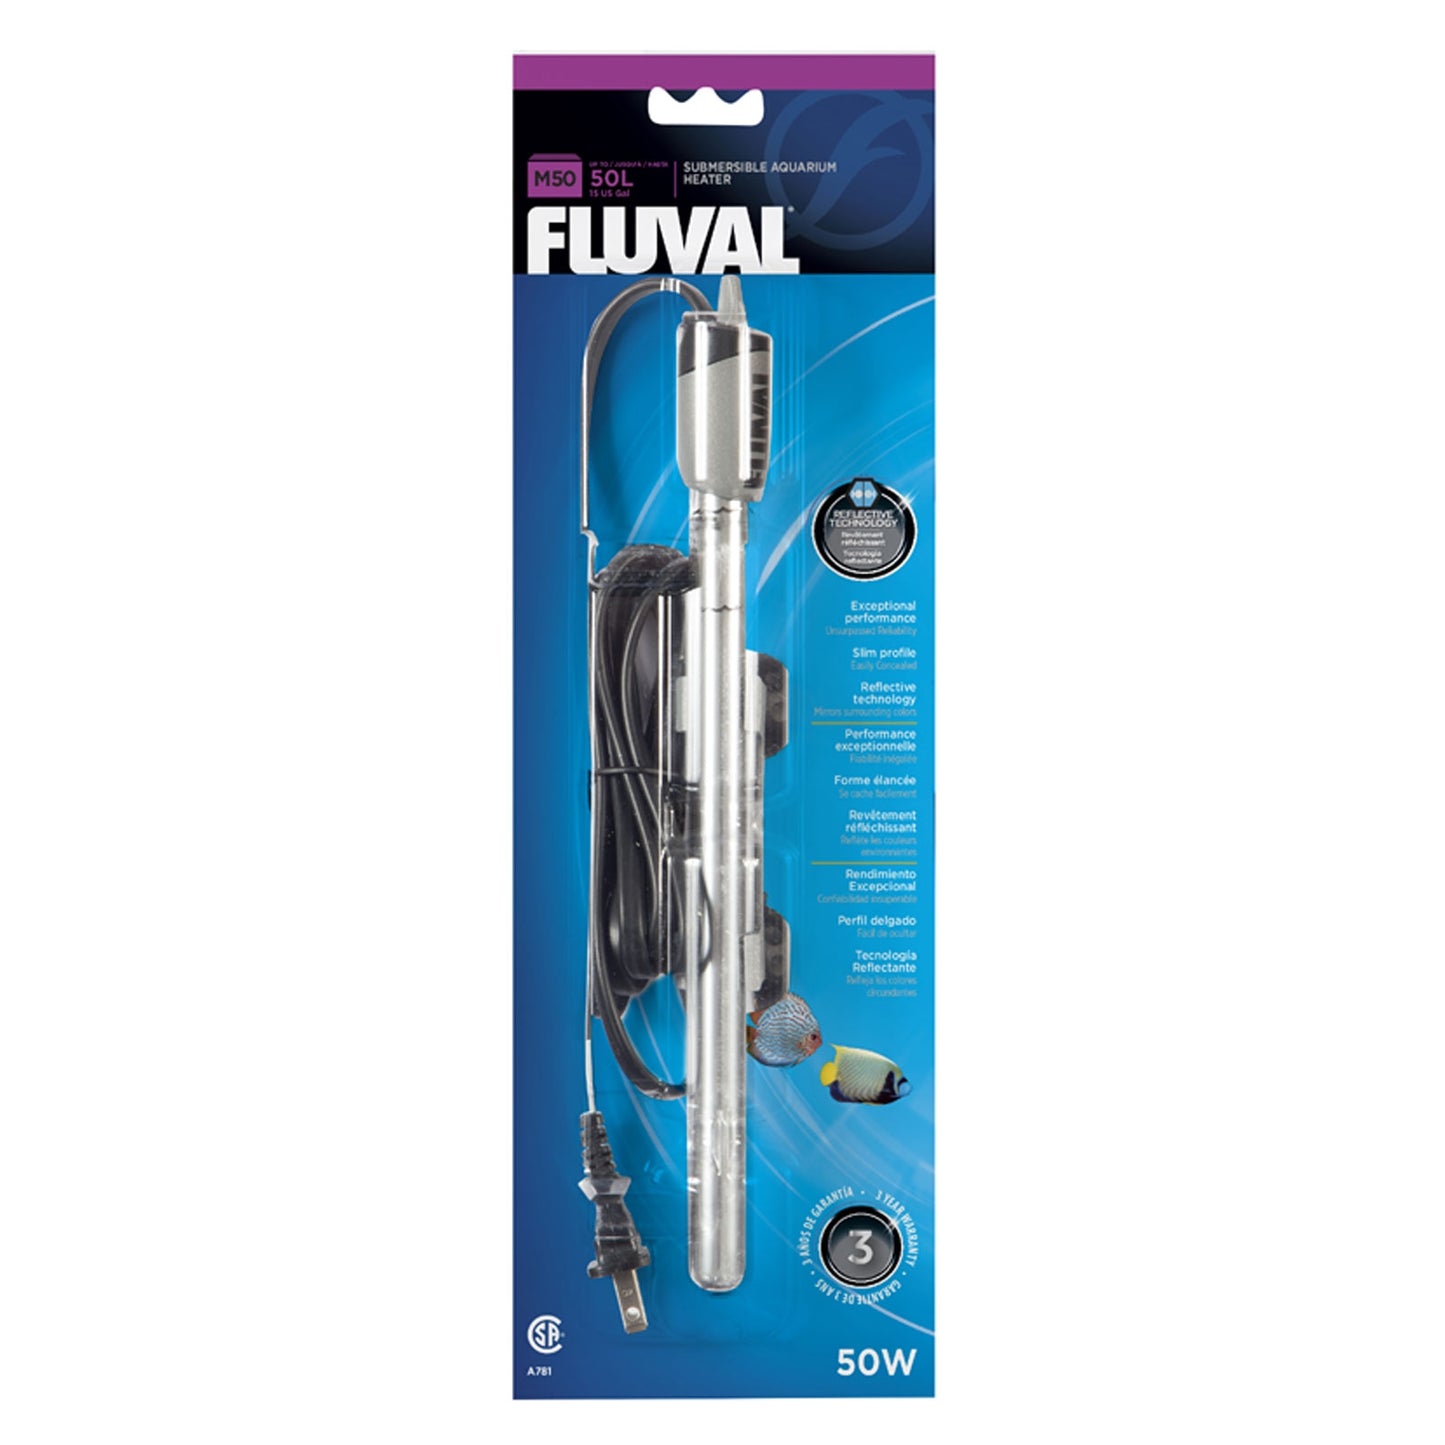 Fluval M Series Premium Aquarium Heater 50W